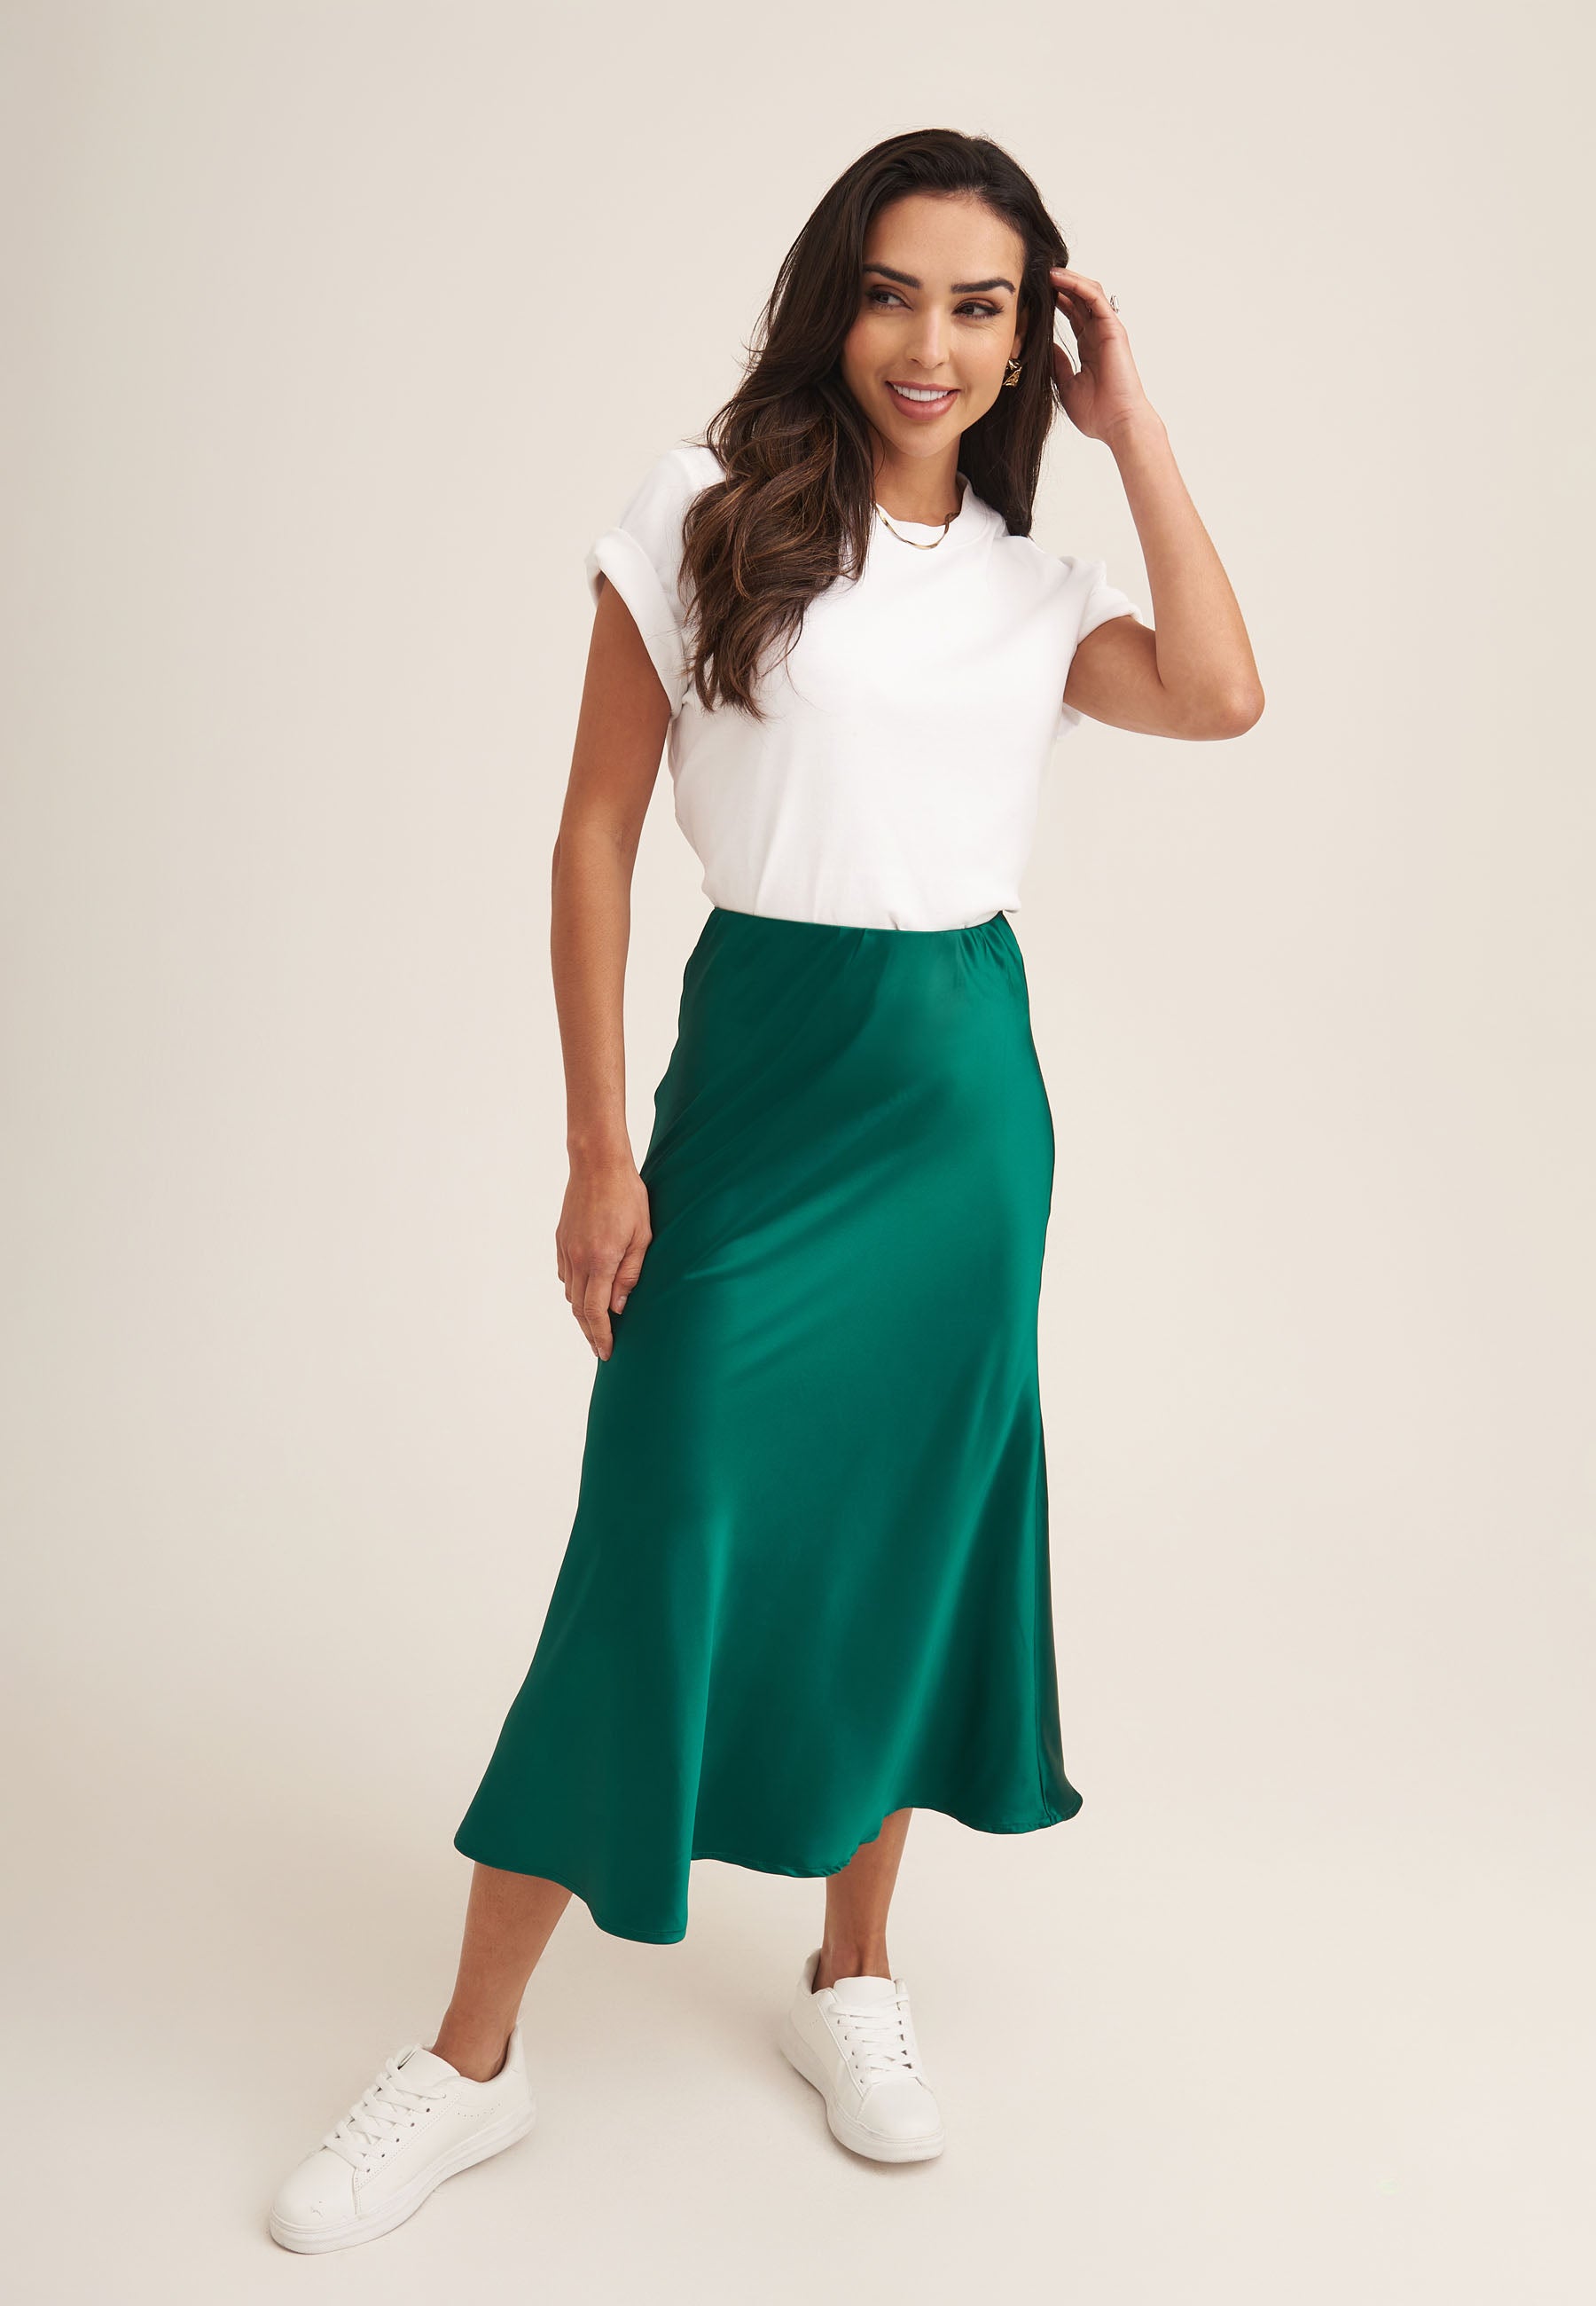 Green Satin Bias Cut Midi Skirt